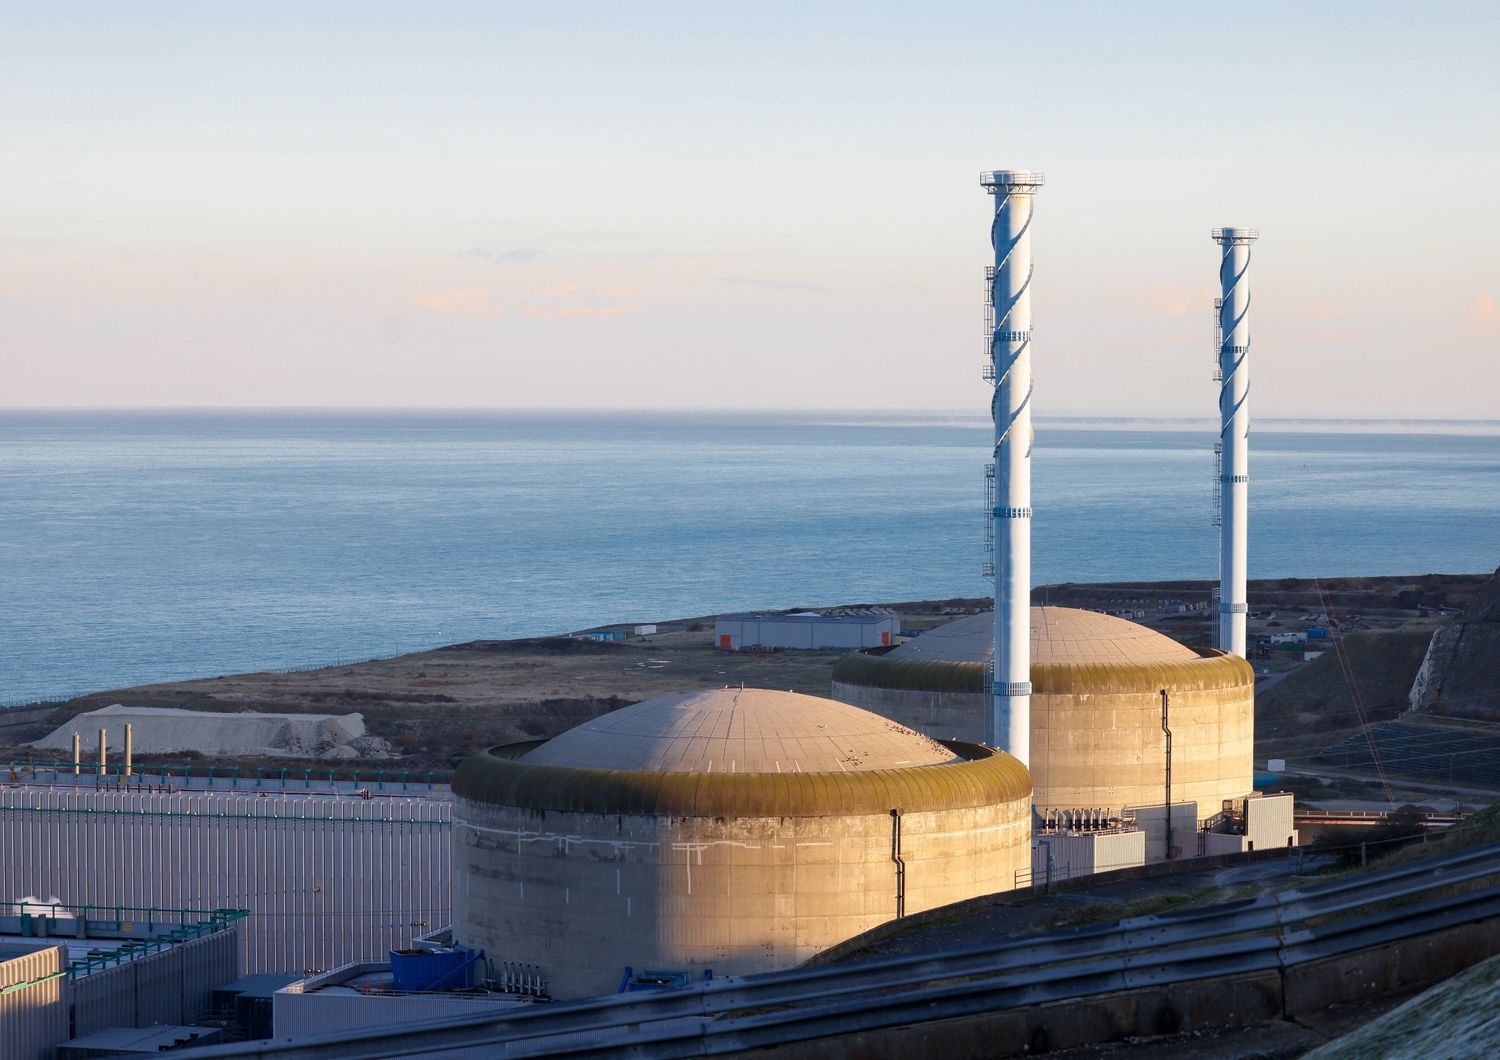 La centrale nucleare di Penly, Francia